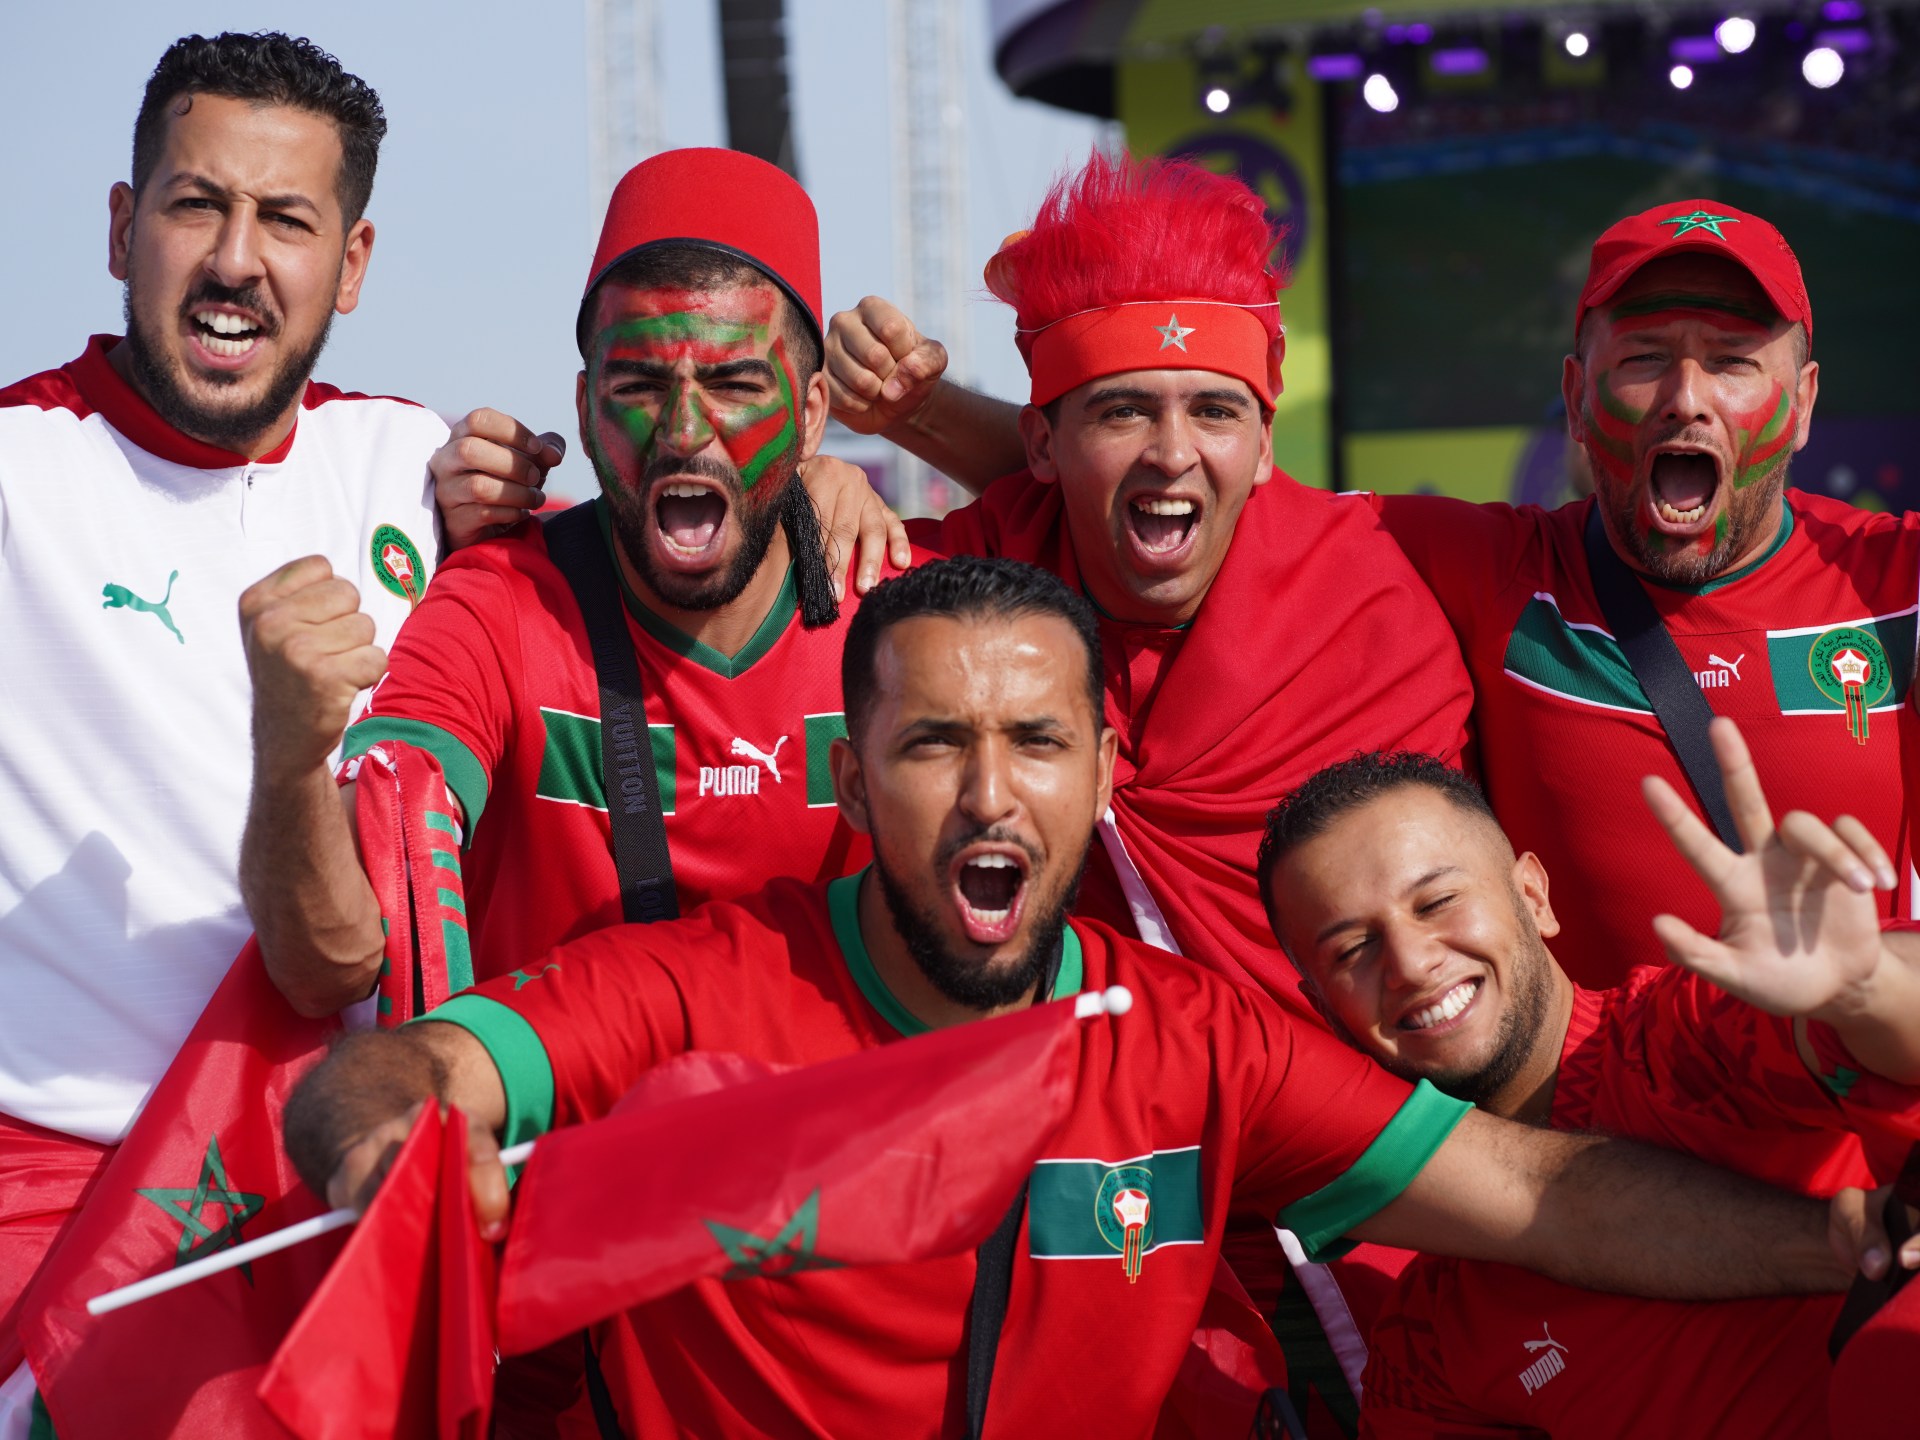 “إنه حلم”: جماهير المغرب منتشية بعد فوز بلجيكا |  أخبار كأس العالم قطر 2022